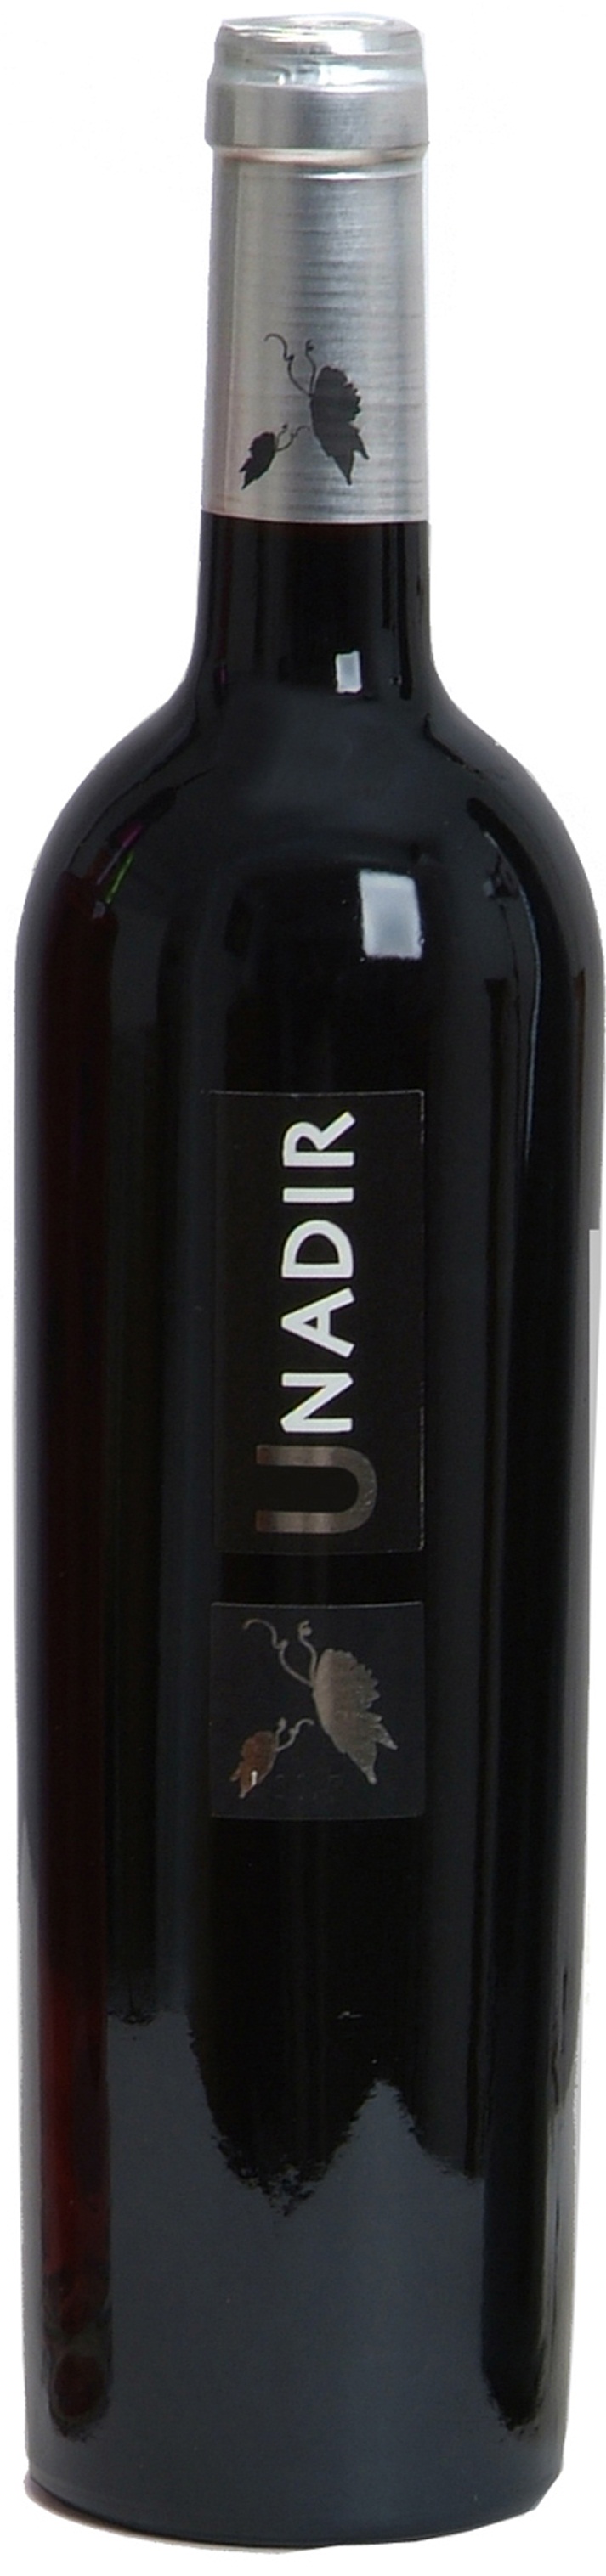 Imagen de la botella de Vino Unadir Tinto Roble